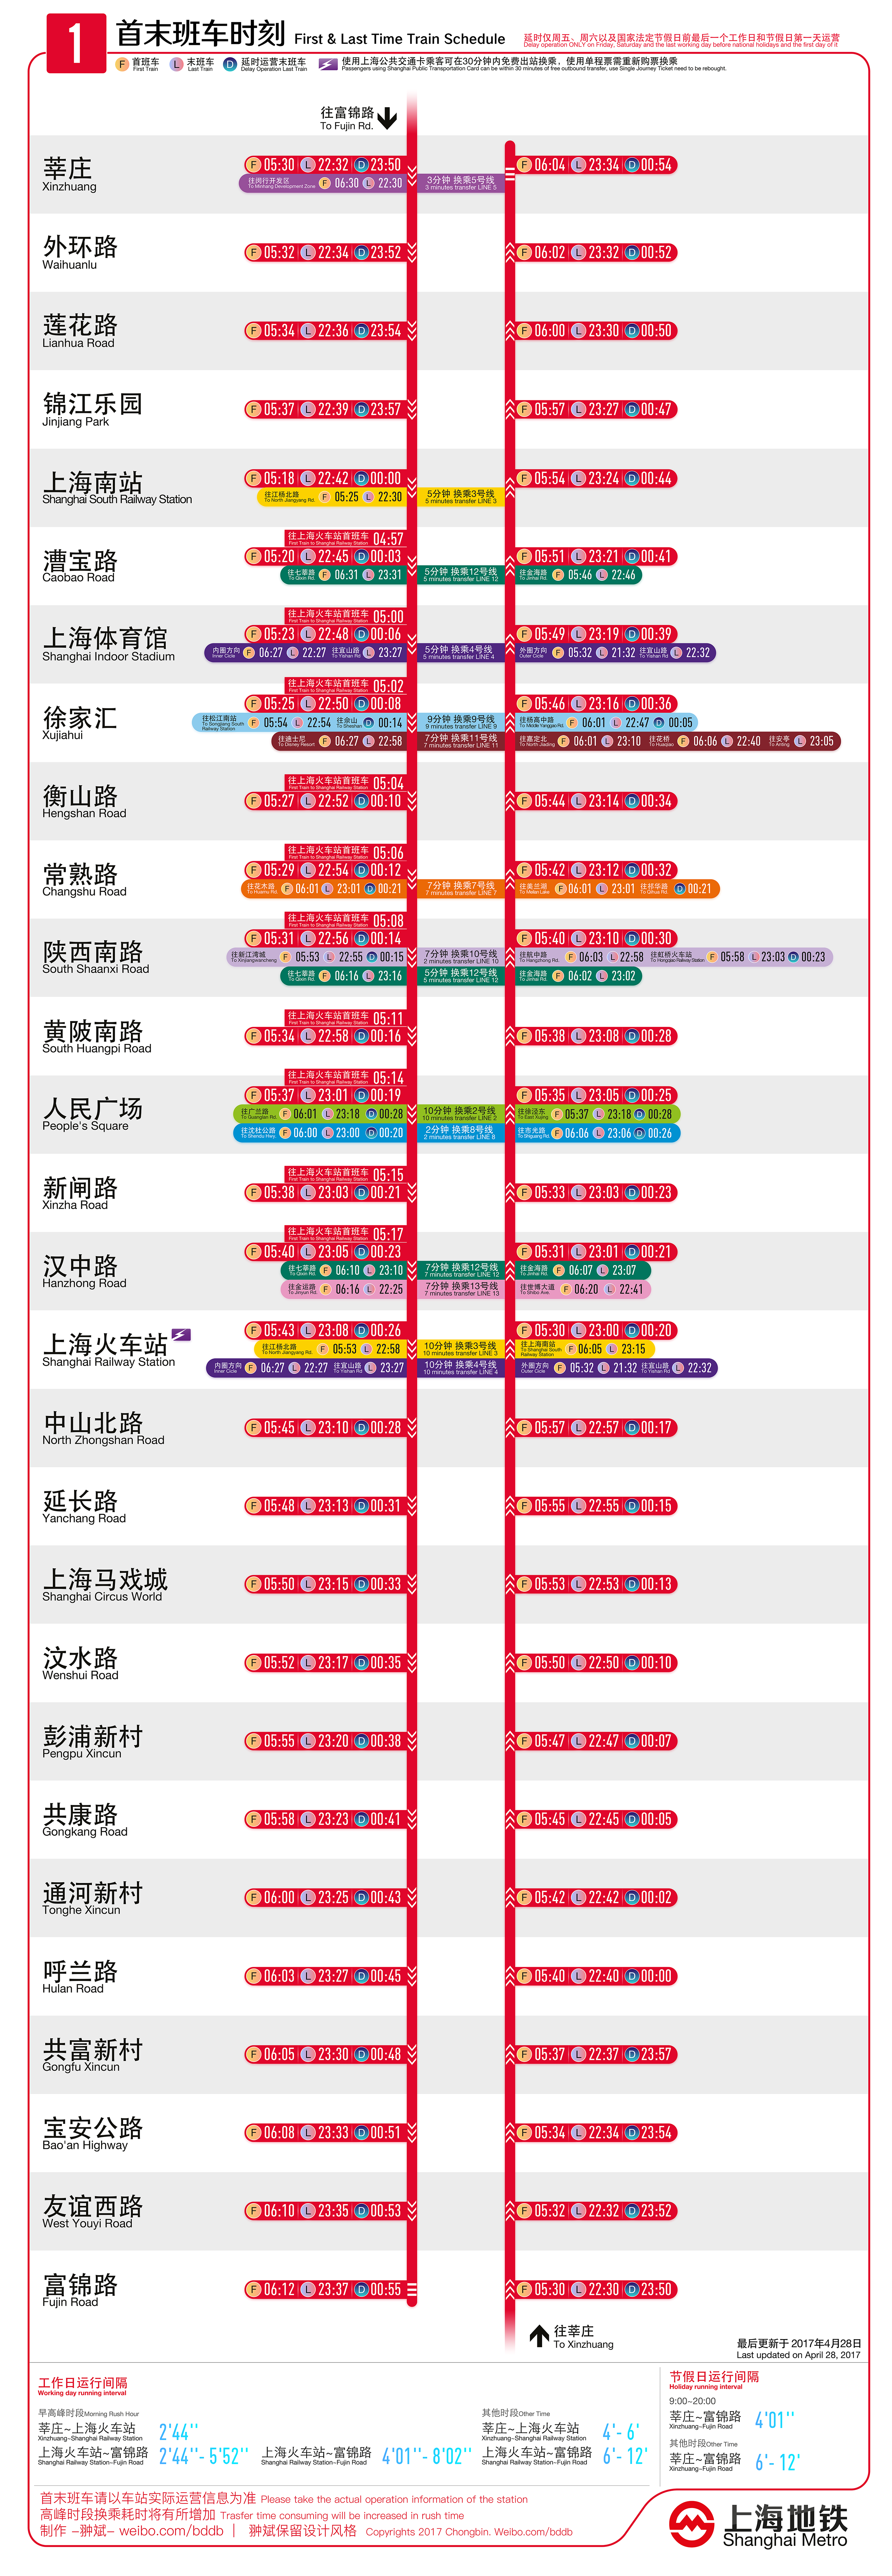 上海地铁1号线首末班车时刻表